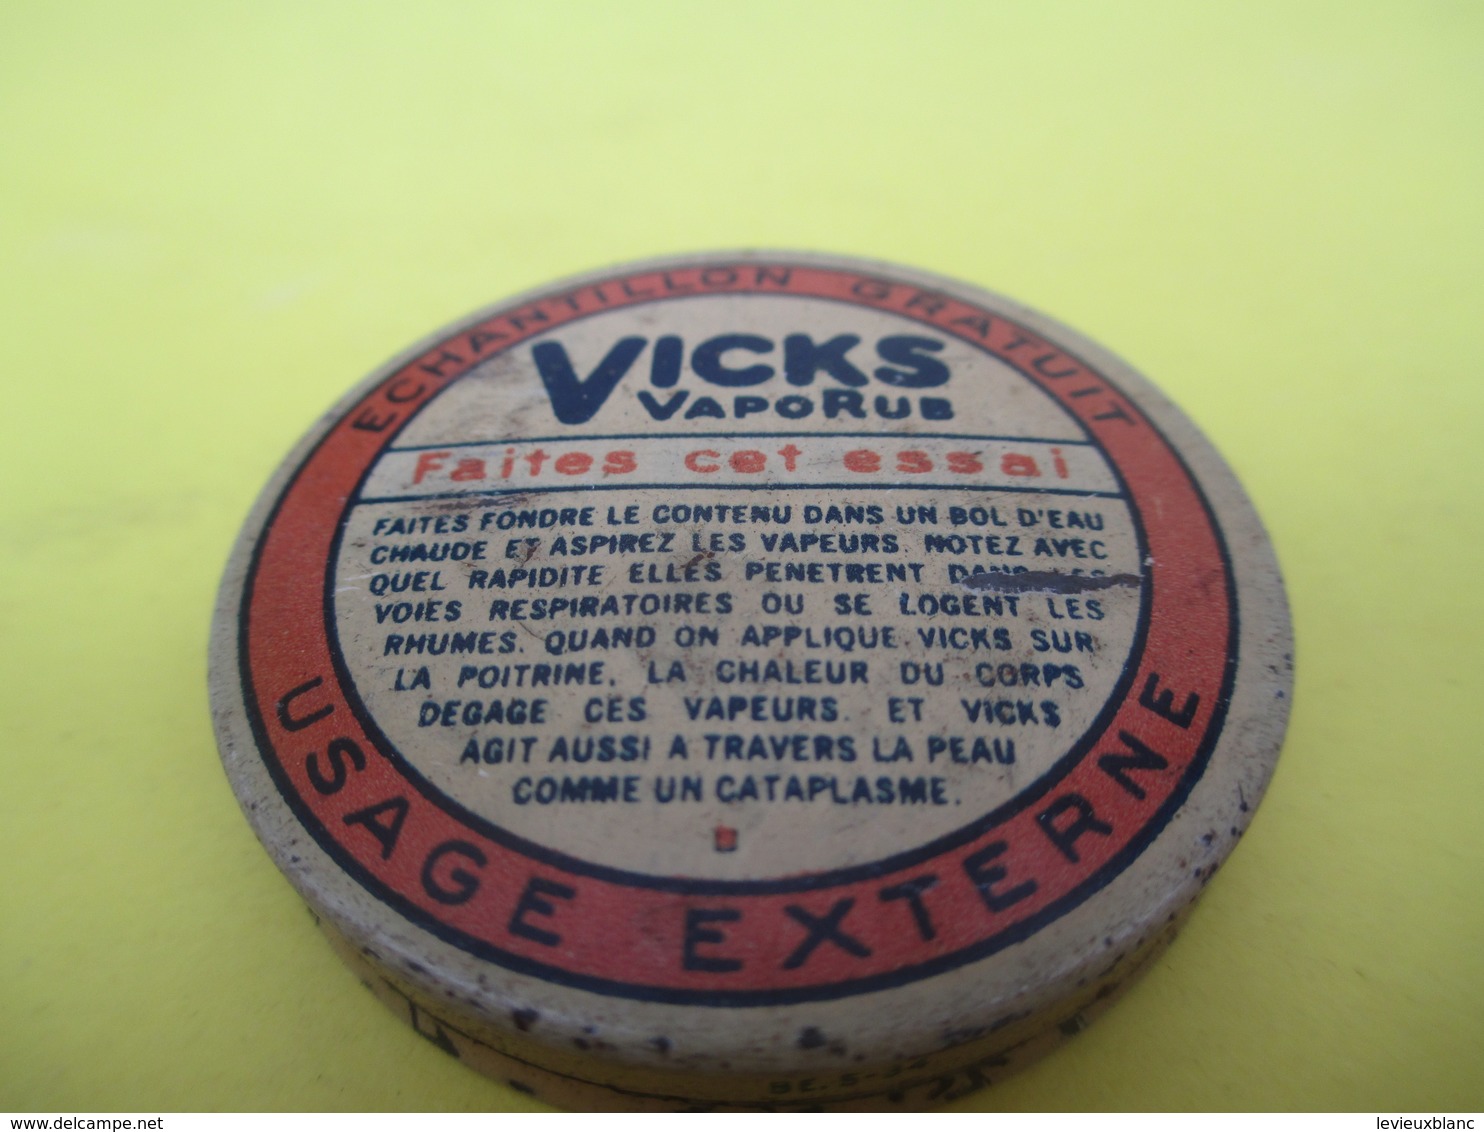 Boite Métallique Ancienne/VICKS Vaporus /échantillon Gratuit/Kosteloos Staal/Belgique//Vers 1930-1950 BFPP176 - Boxes